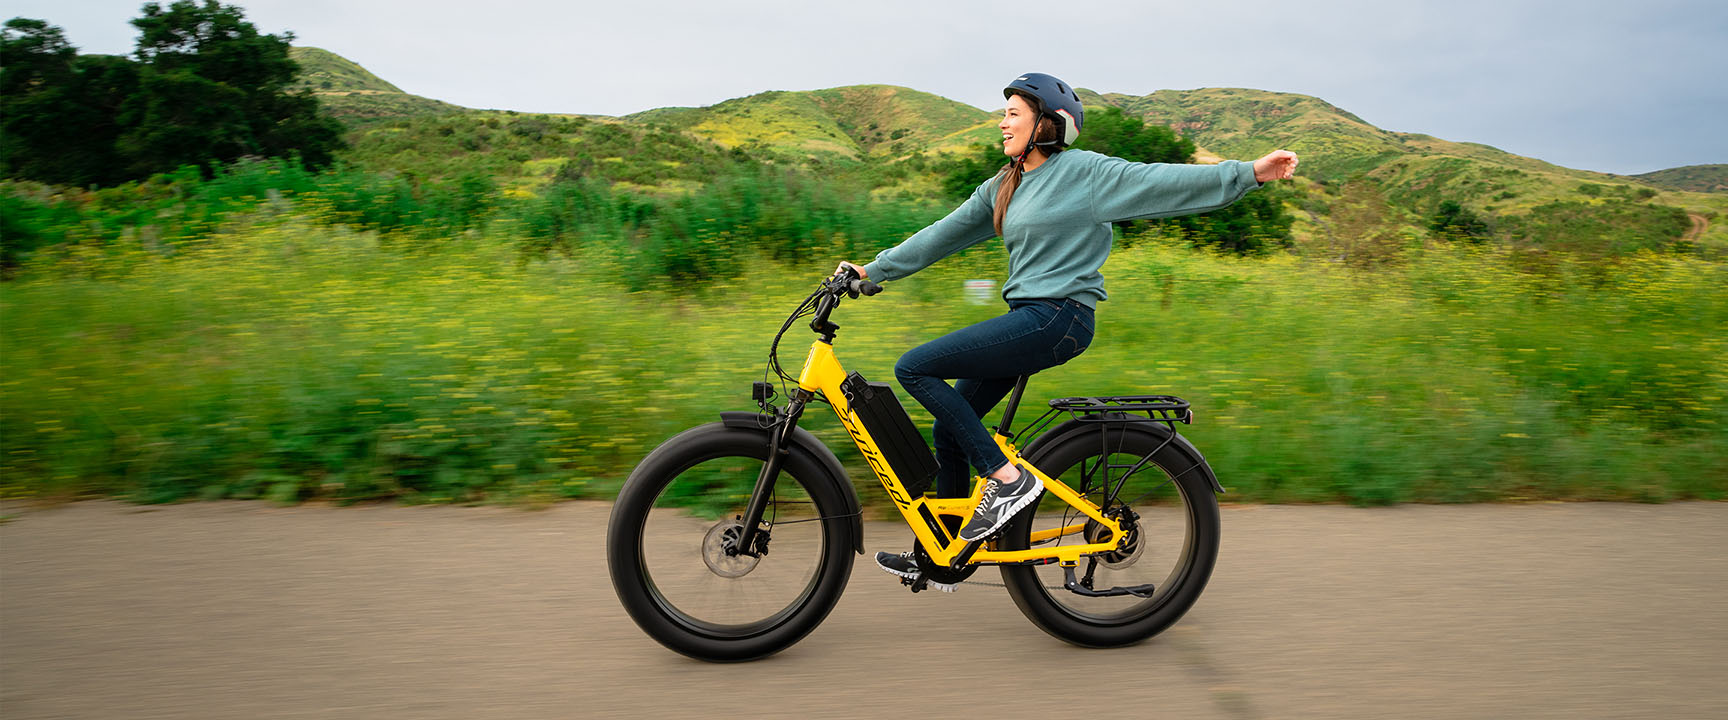 Girl on yellow bike